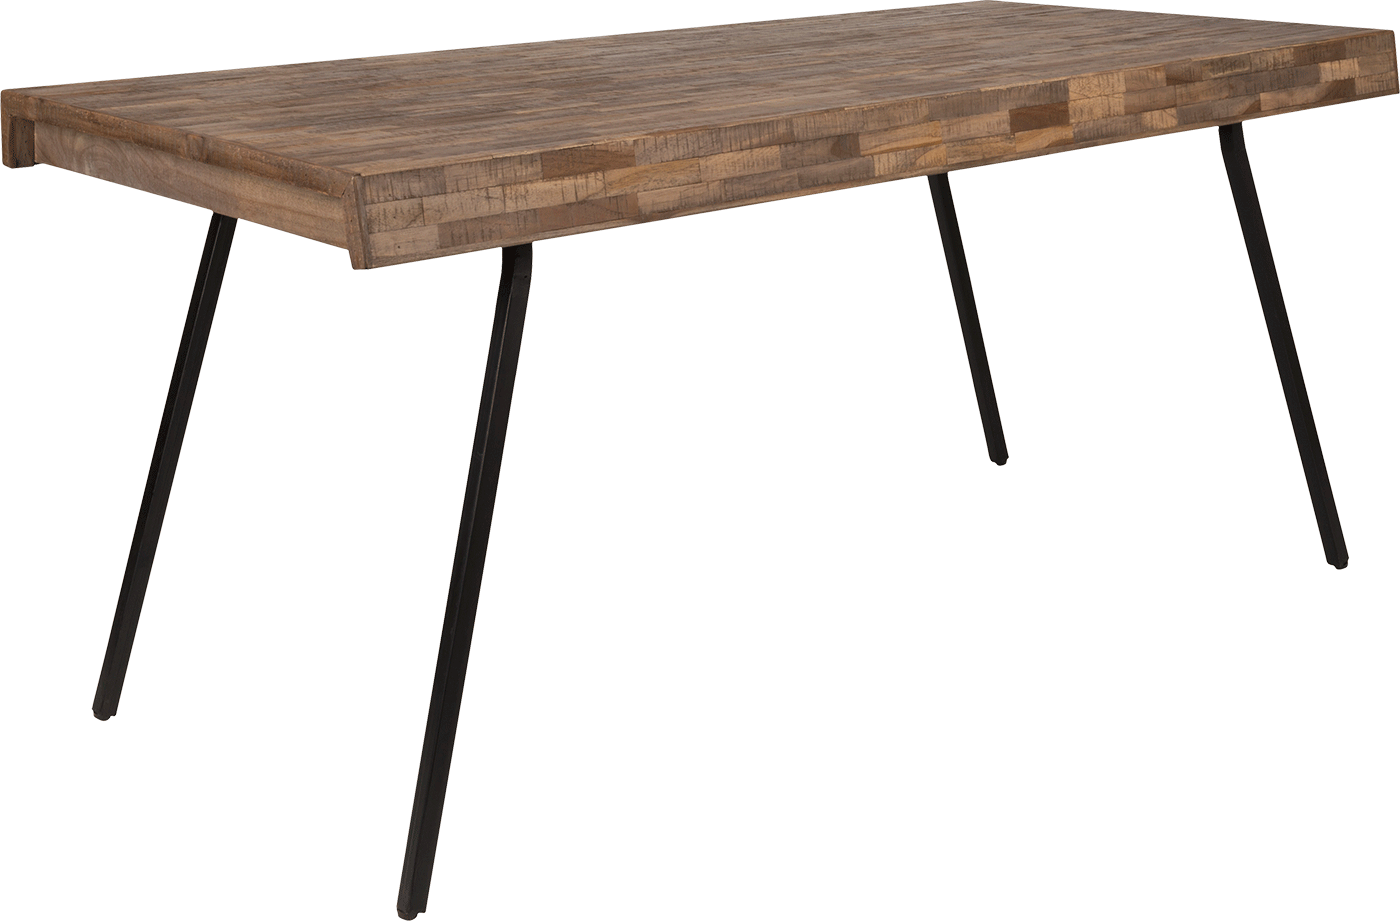 WL-Living Suri jedálenský stôl - Drevo, 160 x 78 cm